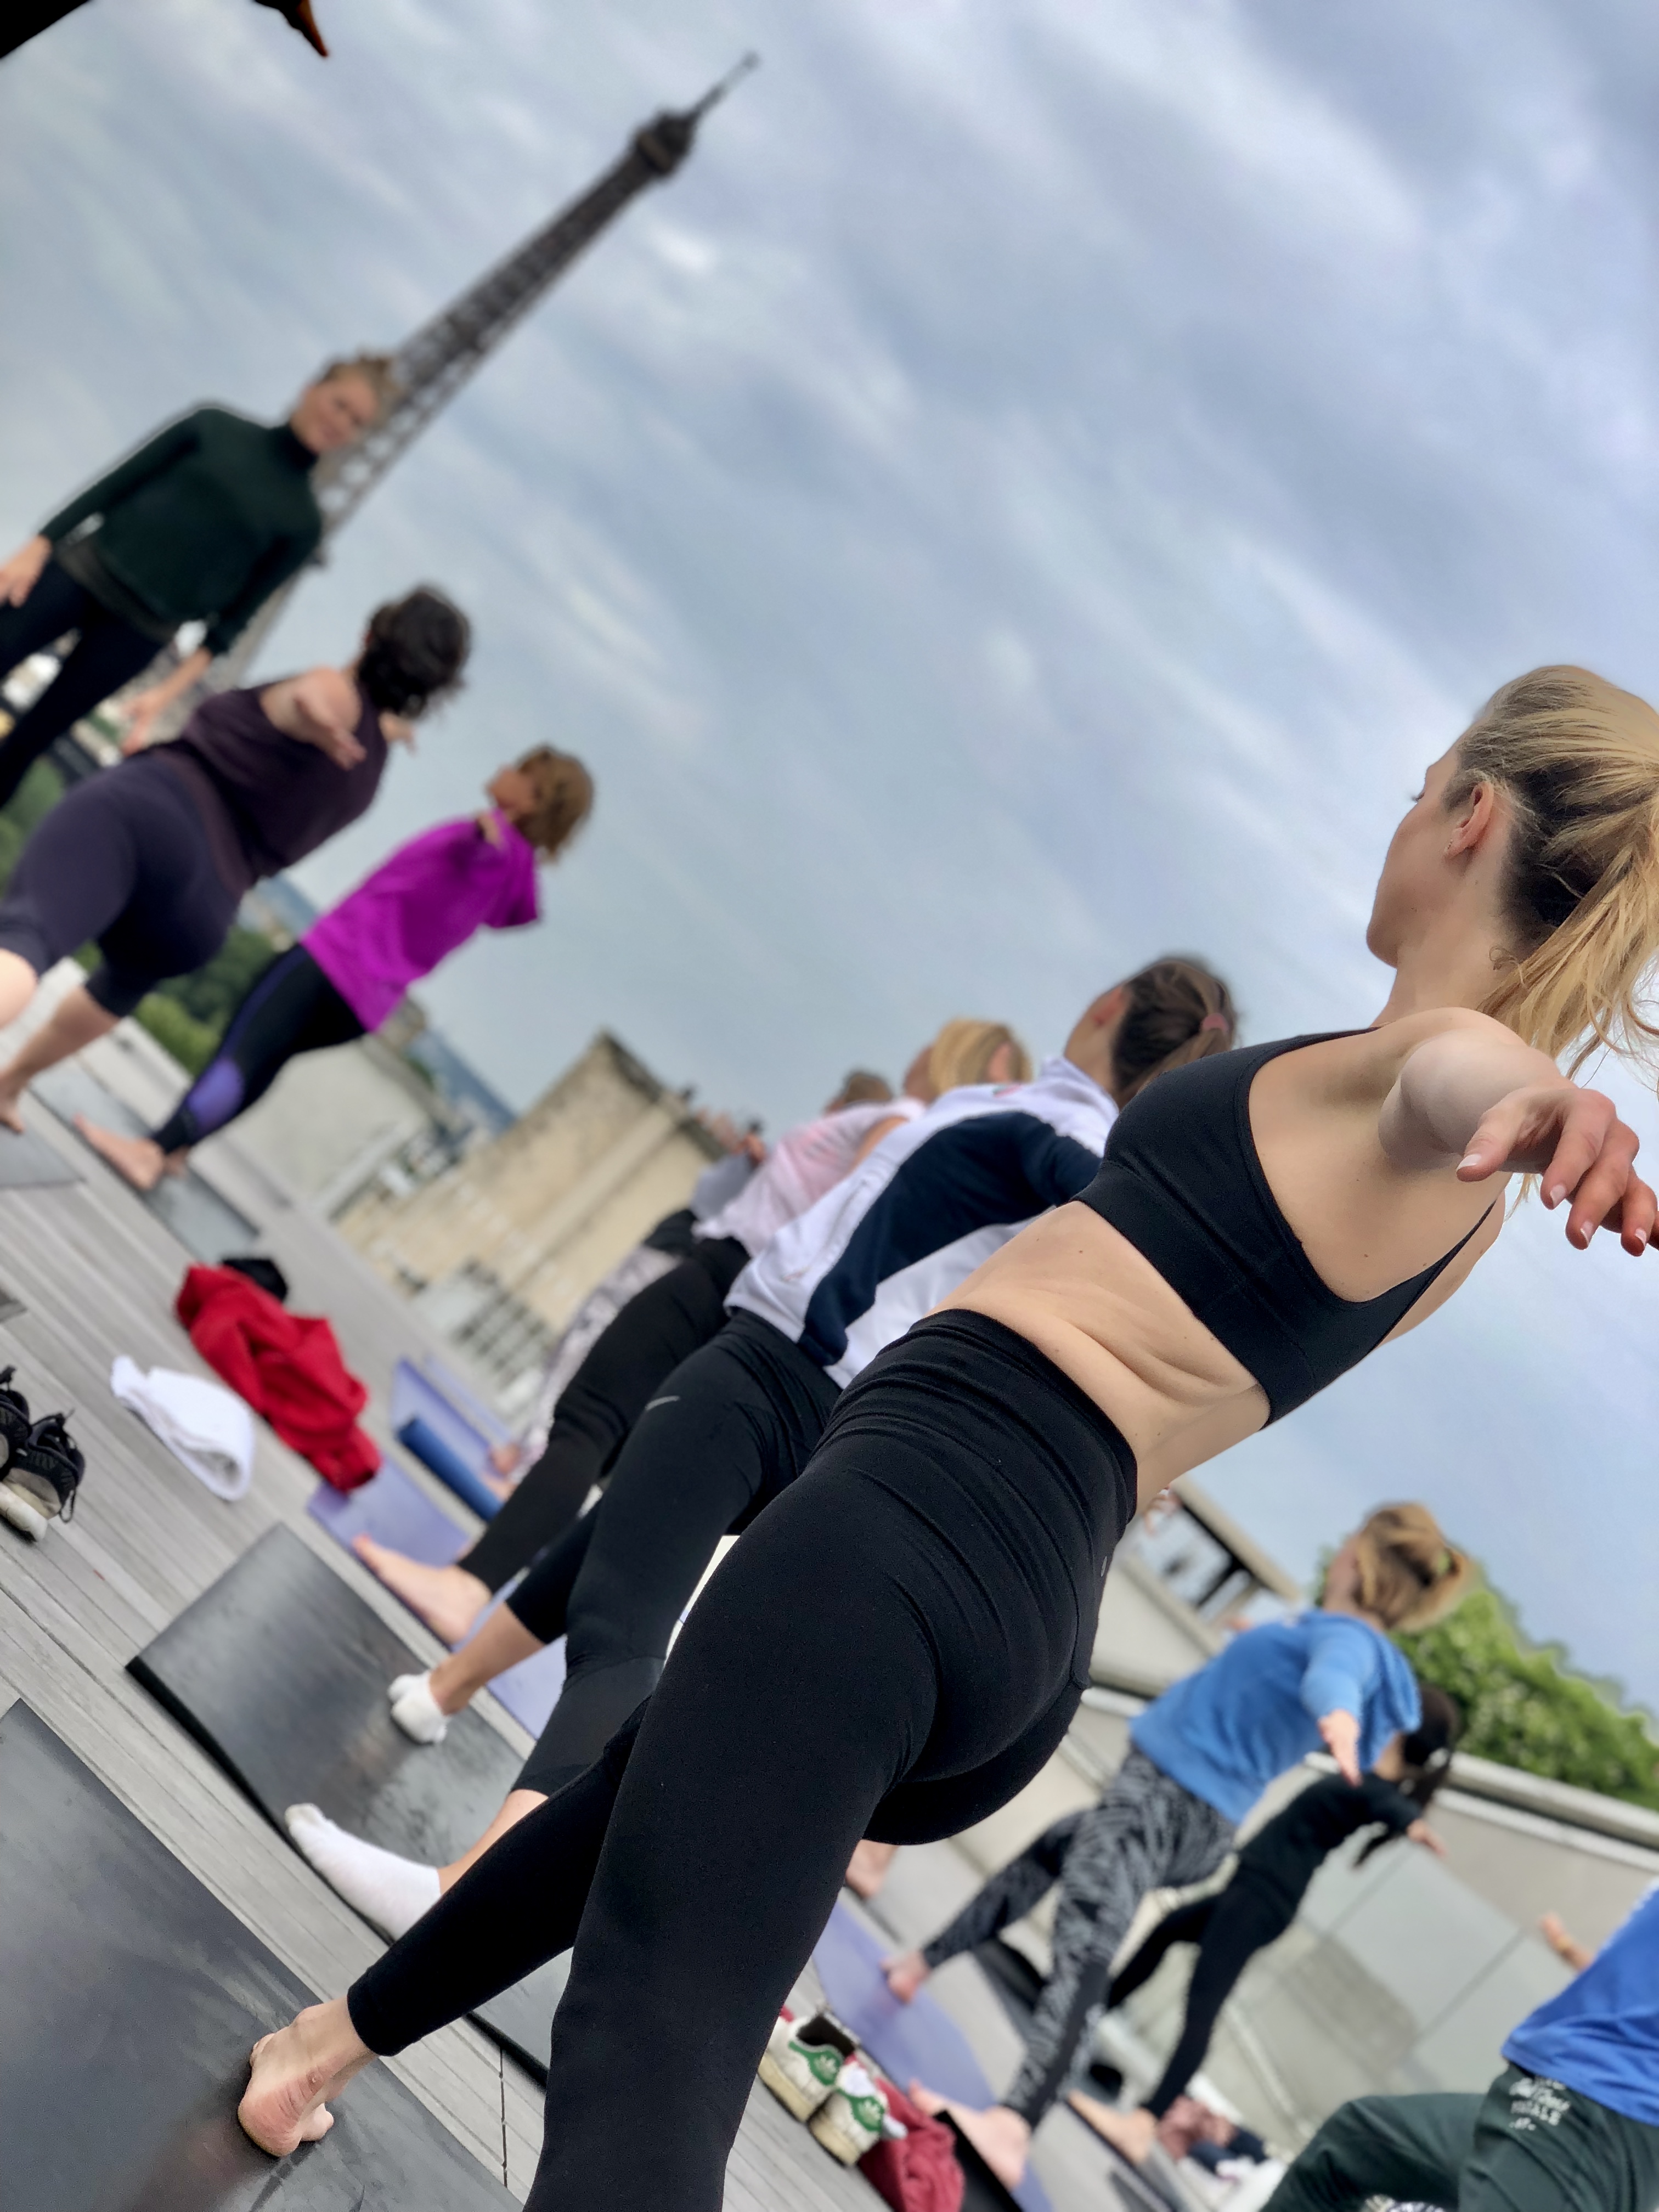 Yoga, rooftop, Yoga paris, paris 8, yoga rooftop, maison blanche, avenue montaigne